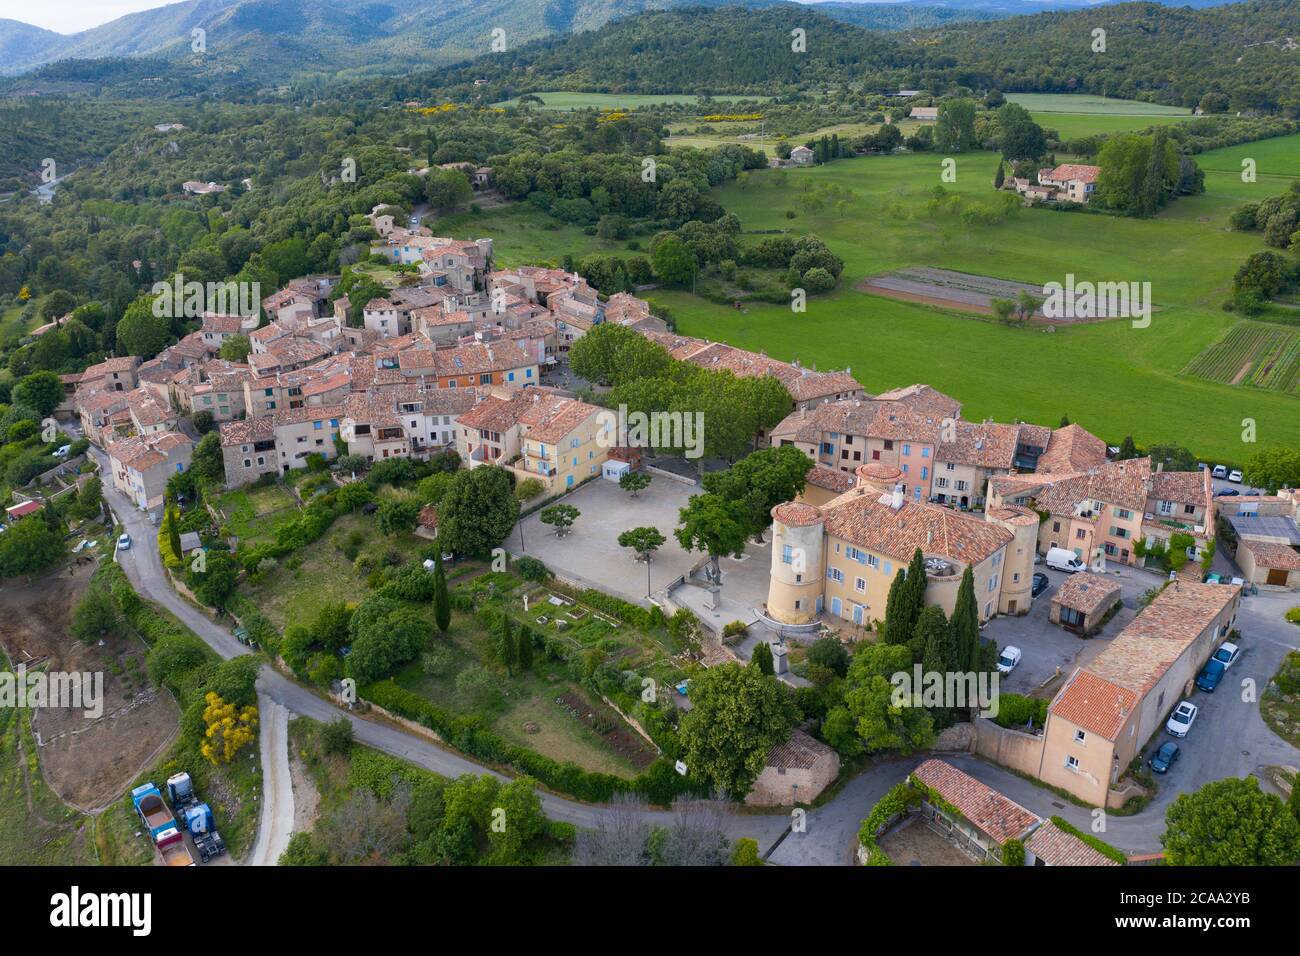 Francia, Var, Vista aérea de Tourtour, pueblo en el cielo, etiquetados Les Plus Beaux Villages de France (los pueblos más bellos de Francia) Foto de stock